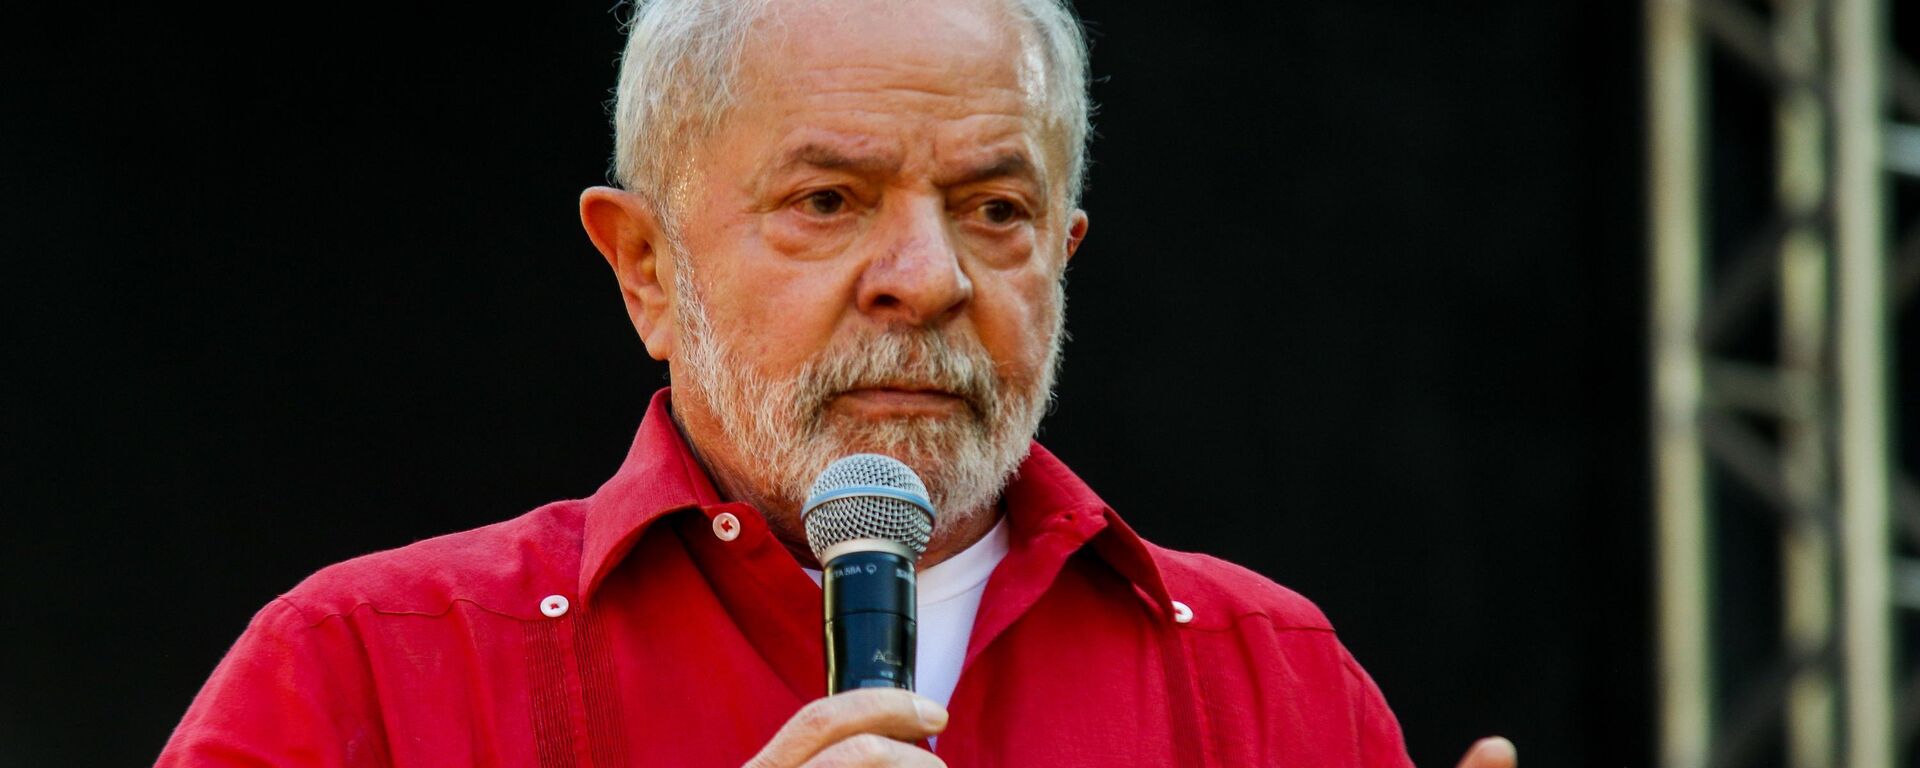 O pré-candidato à Presidência Luiz Inácio Lula da Silva (PT), na foto, com Geraldo Alckmin (PSB), participa de ato público do PT na cidade de Diadema (SP), em 9 de julho de 2022 - Sputnik Brasil, 1920, 09.07.2022